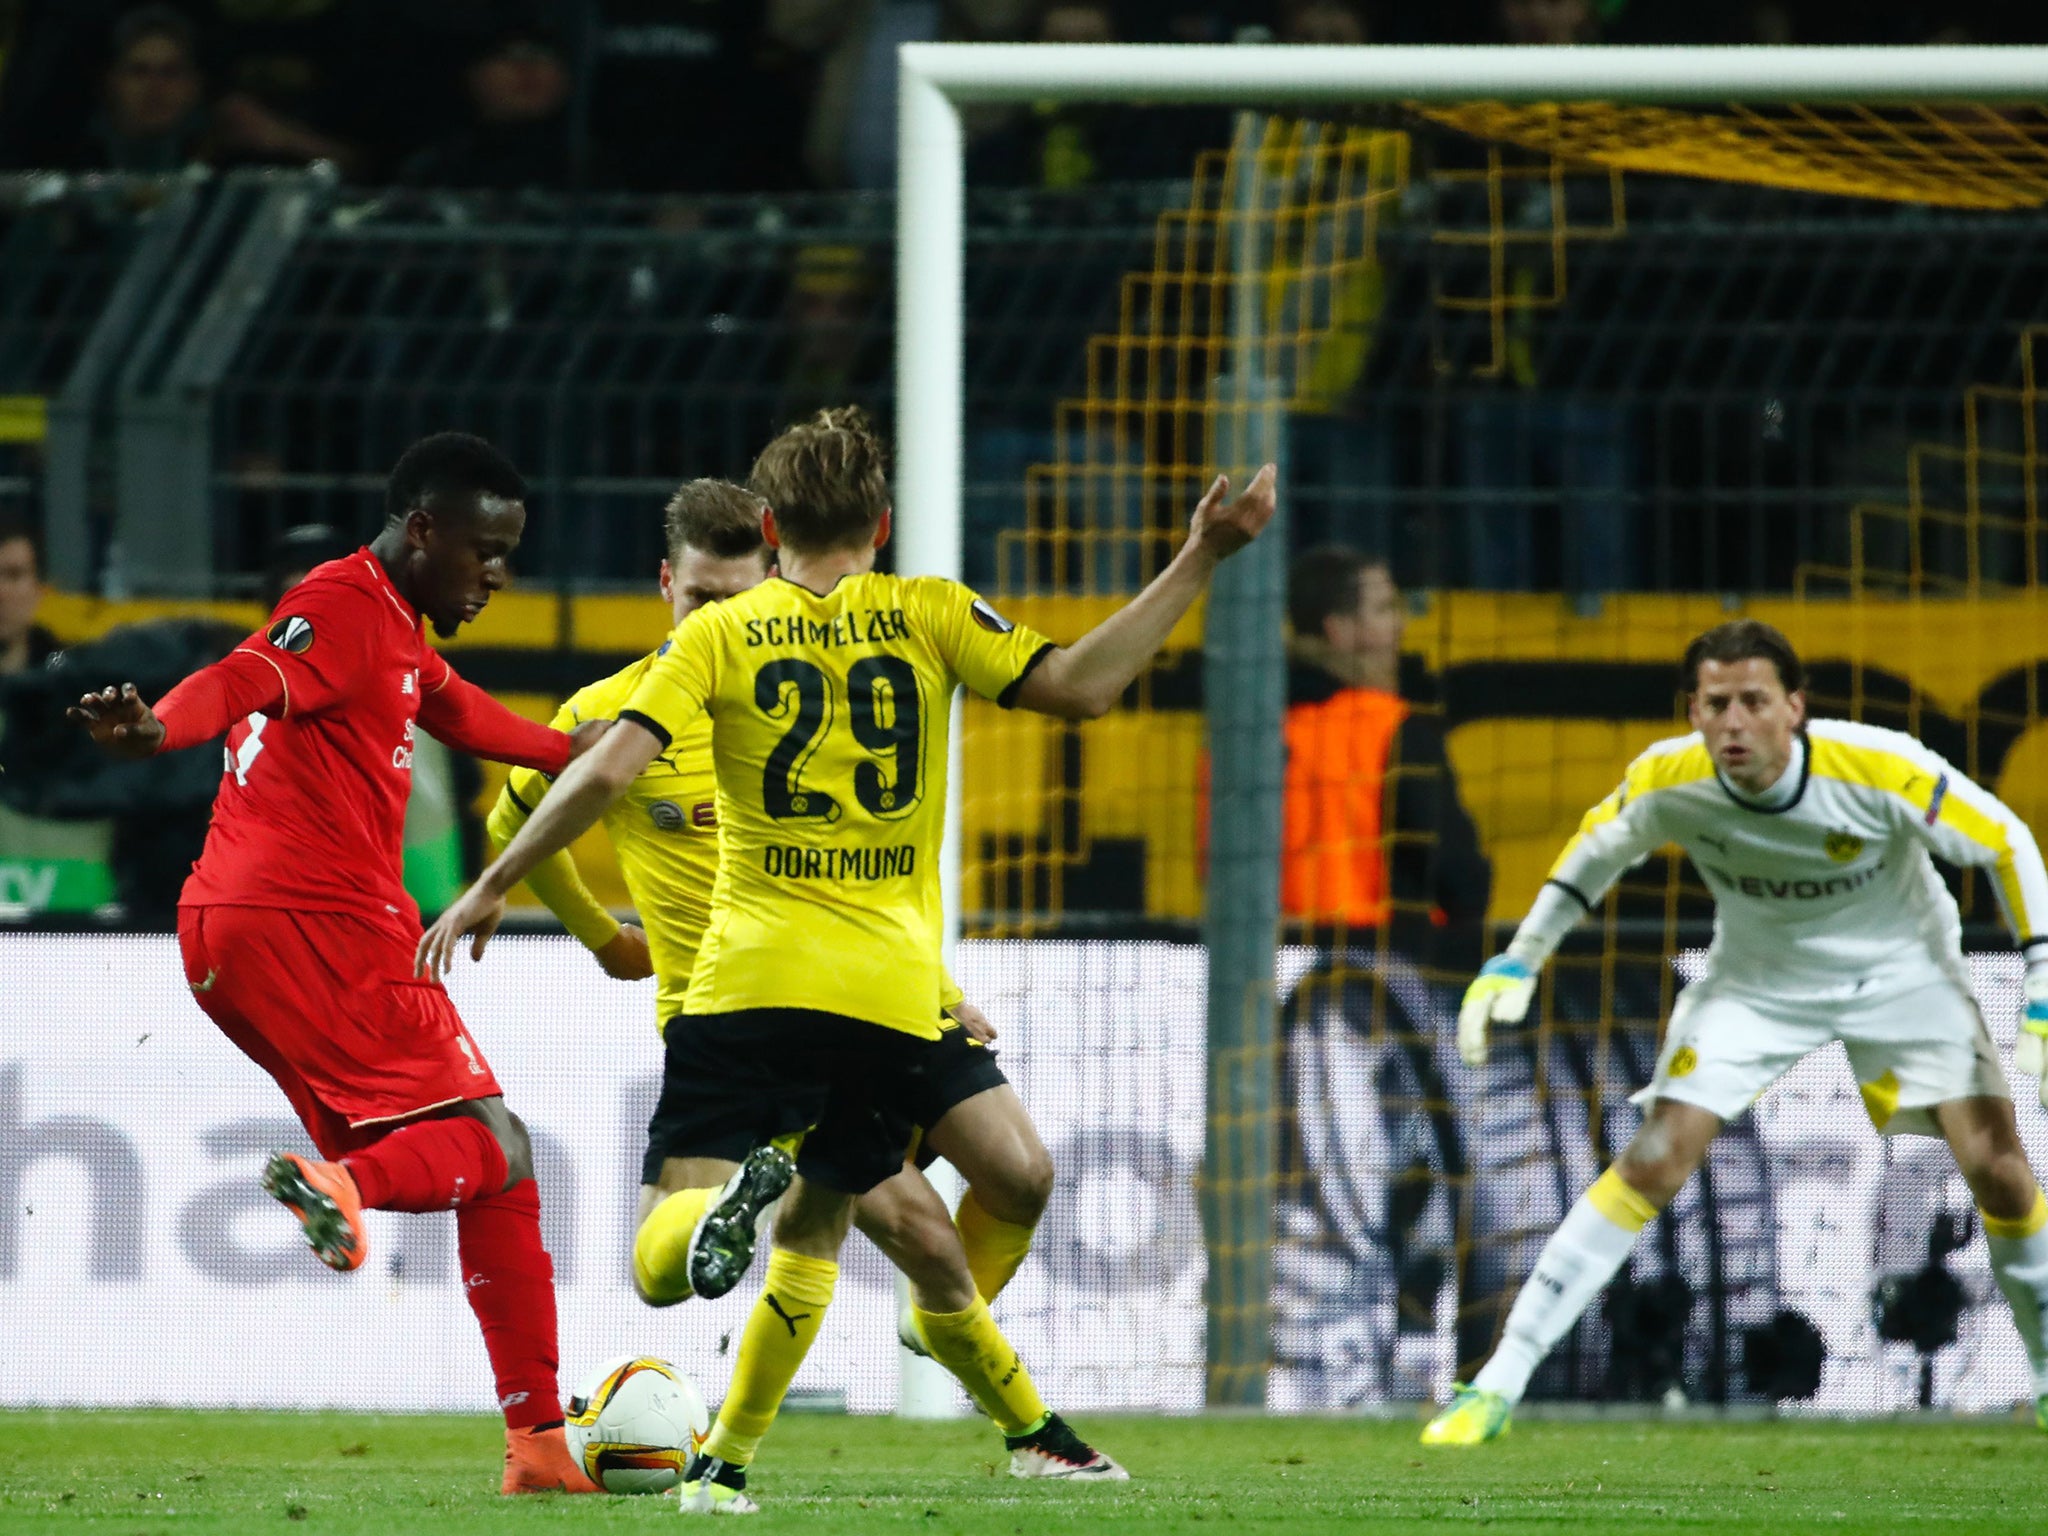 Divock Origi fires in the opening goal against Dortmund